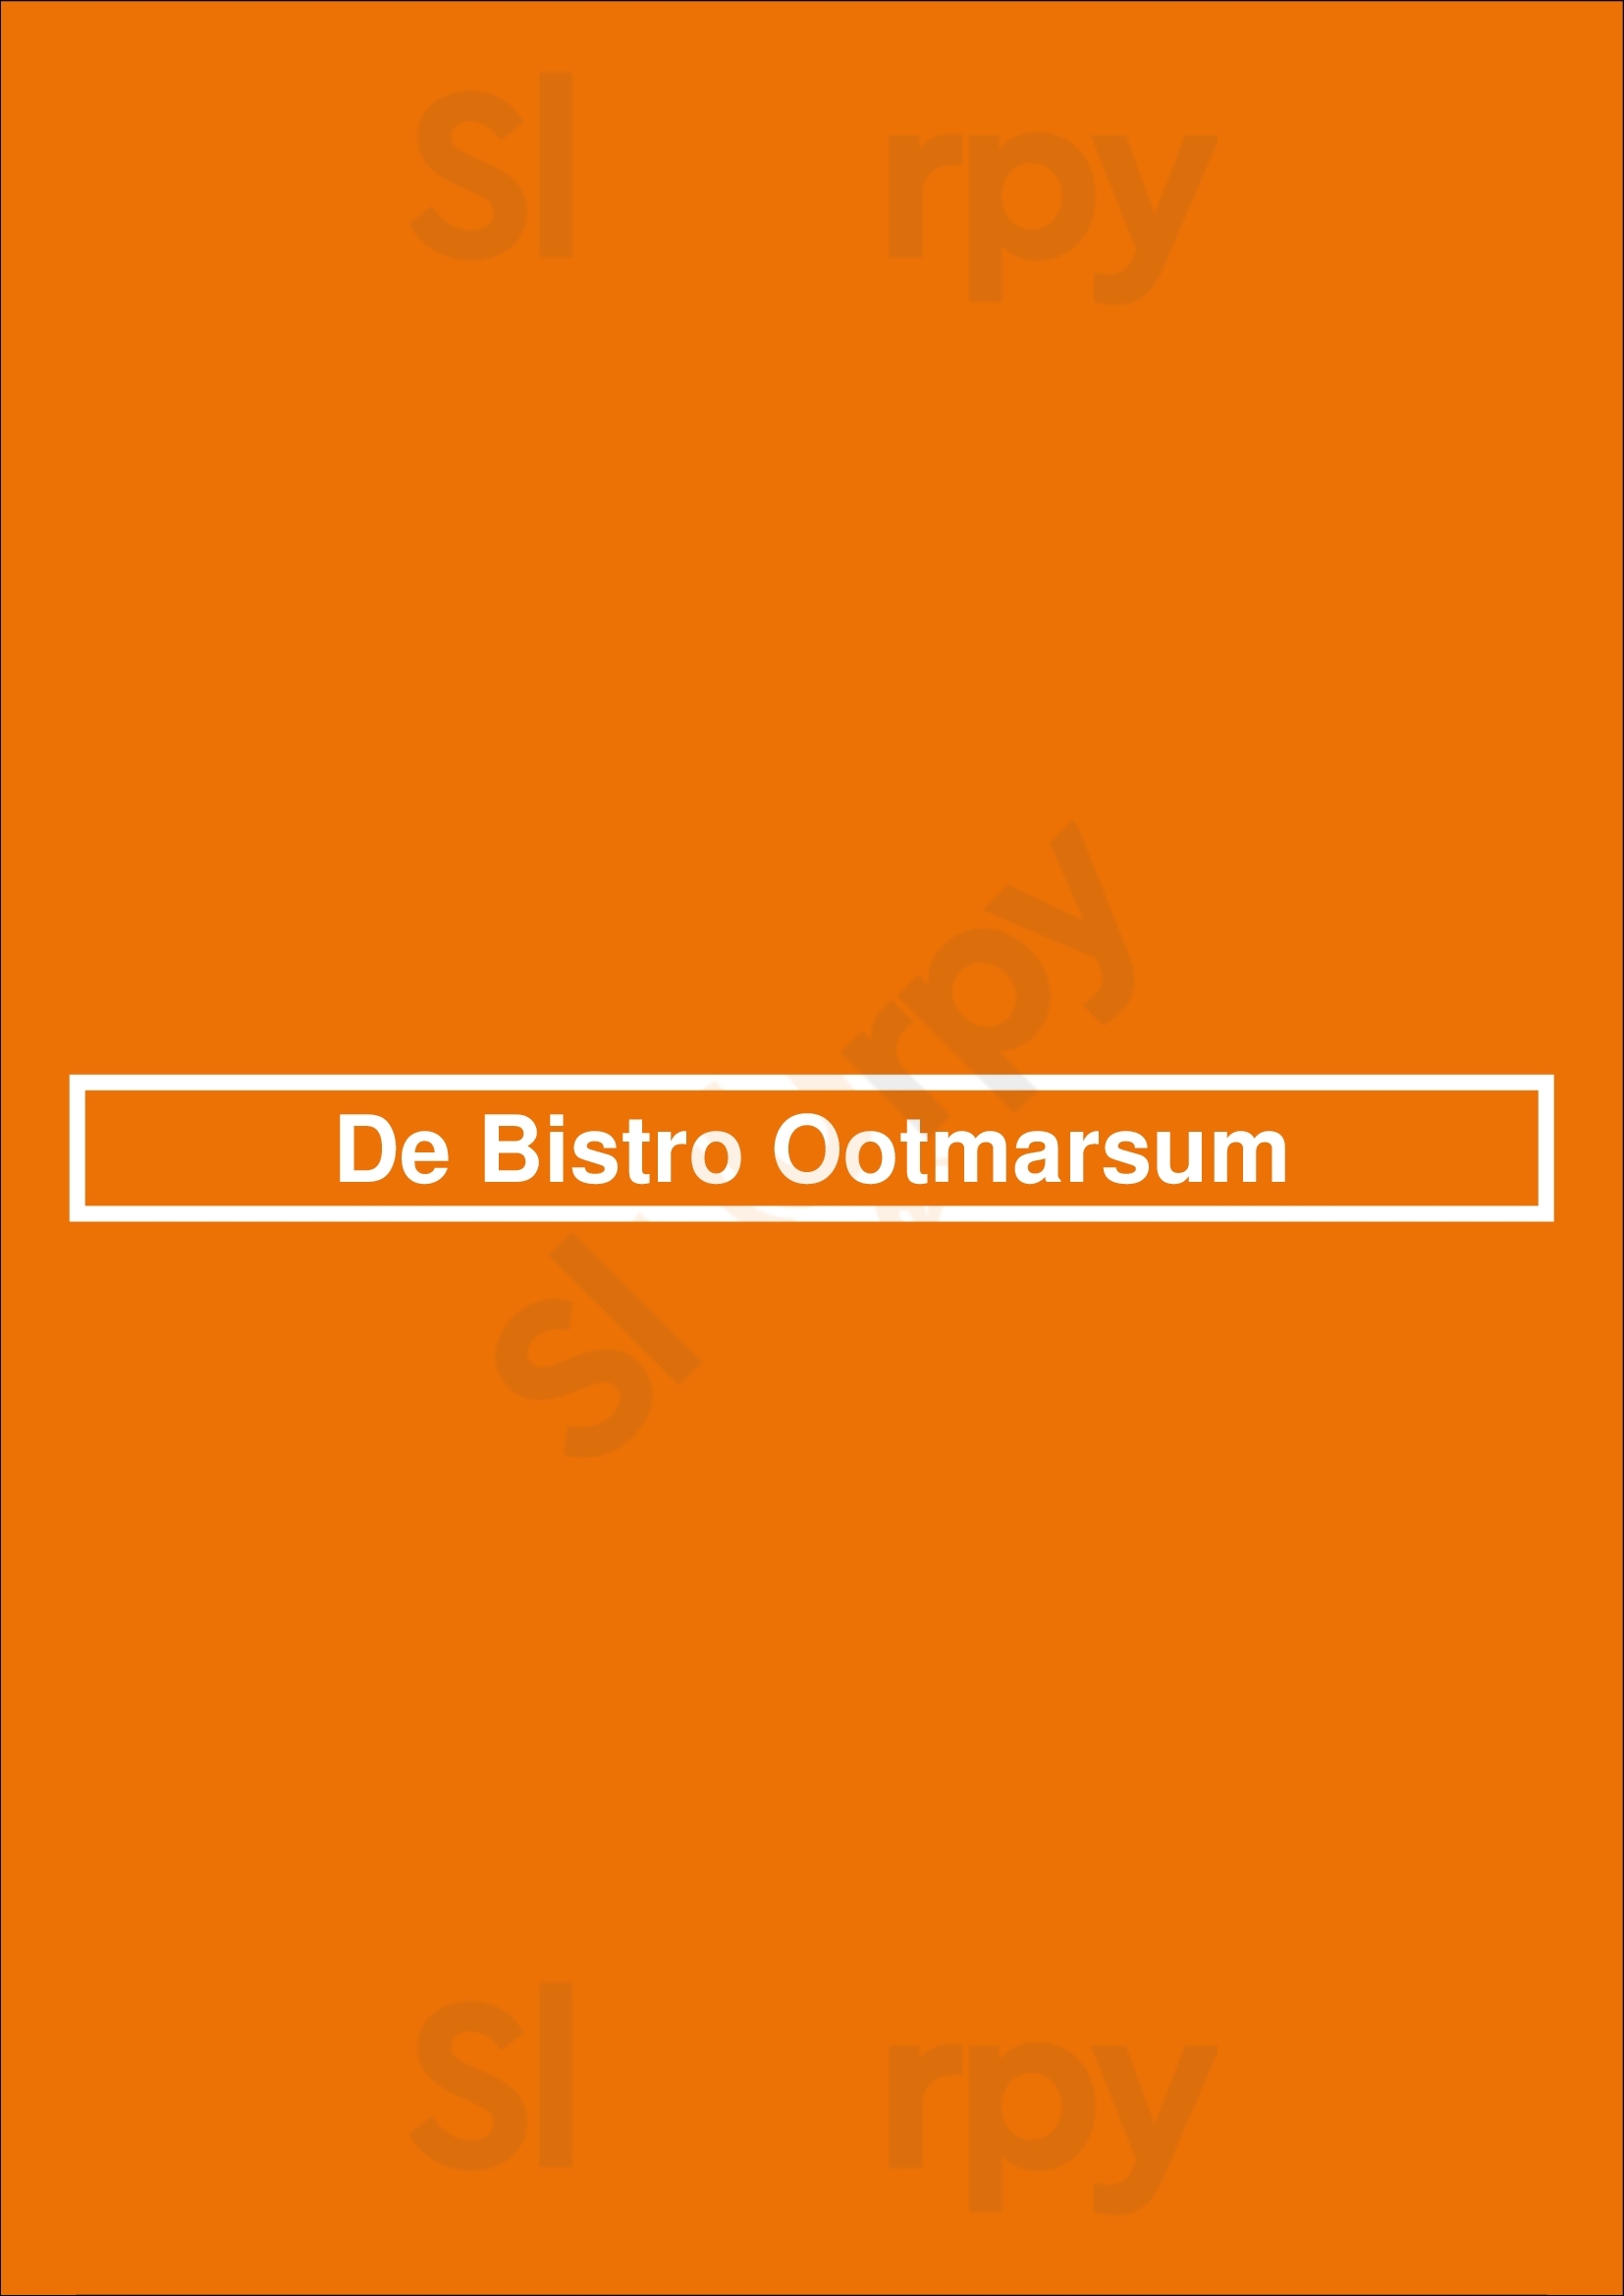 De Bistro Ootmarsum Ootmarsum Menu - 1